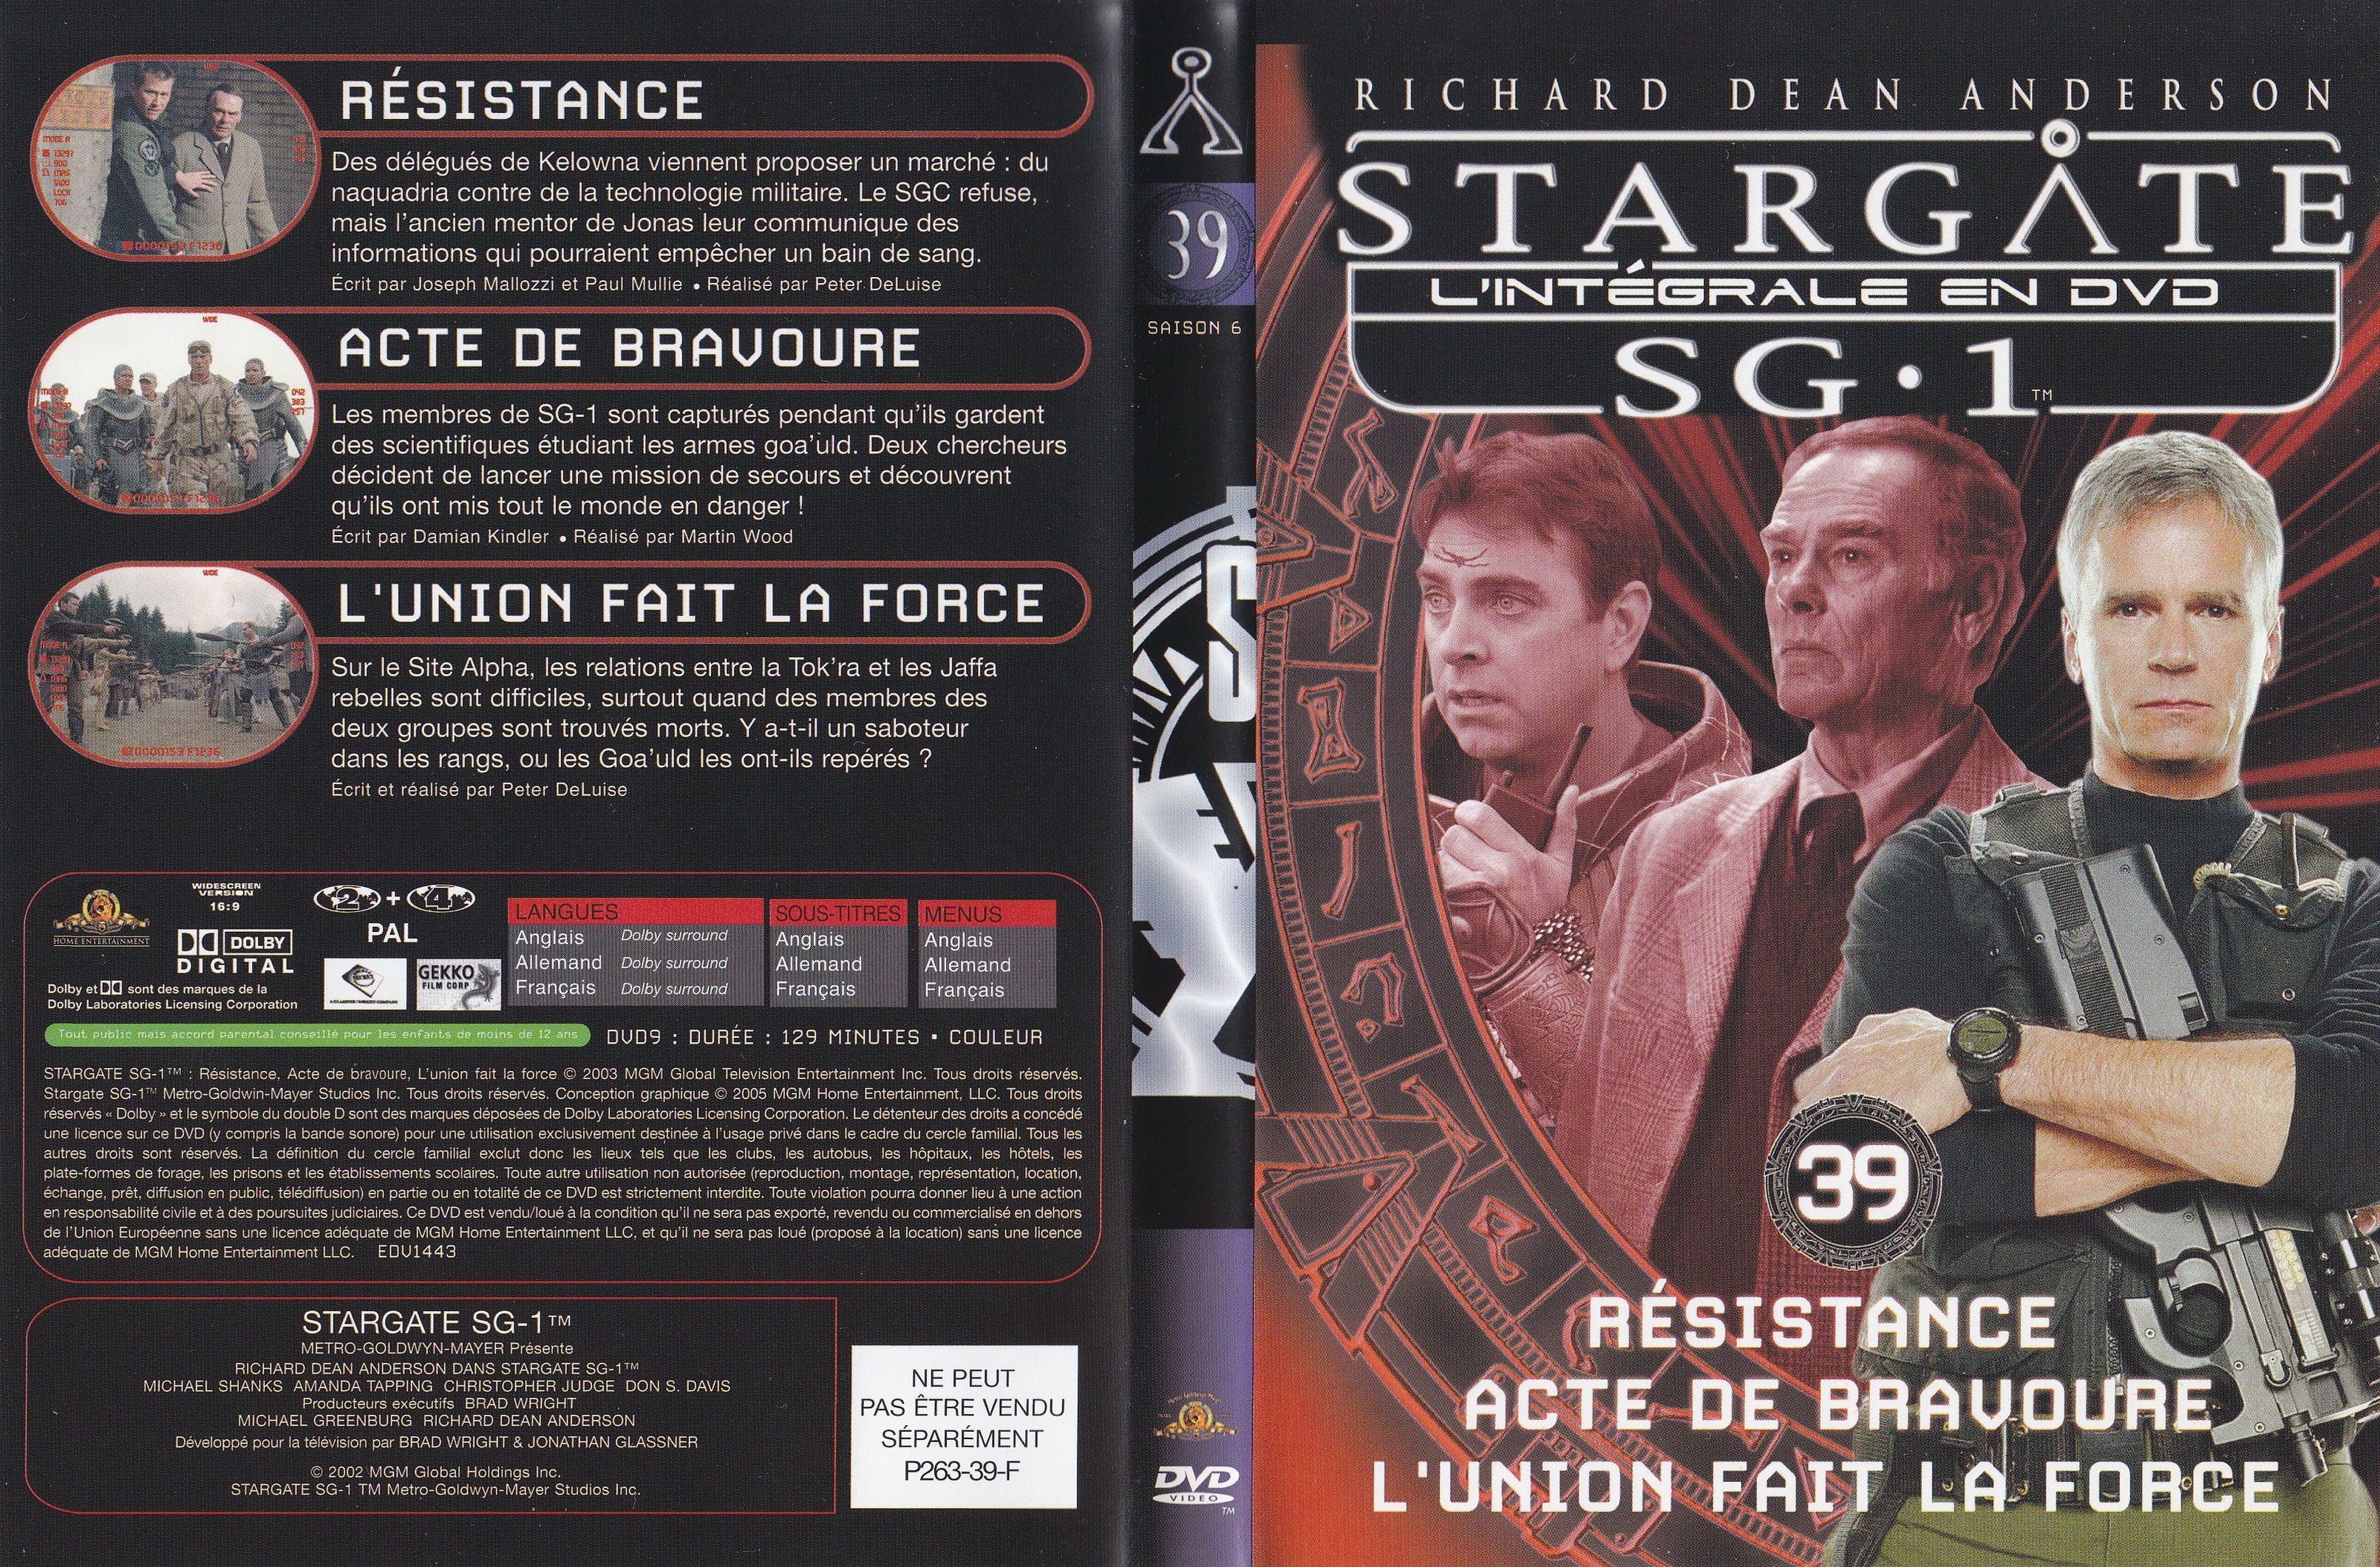 Stargate SG1 Intgrale Saison 6 vol 39